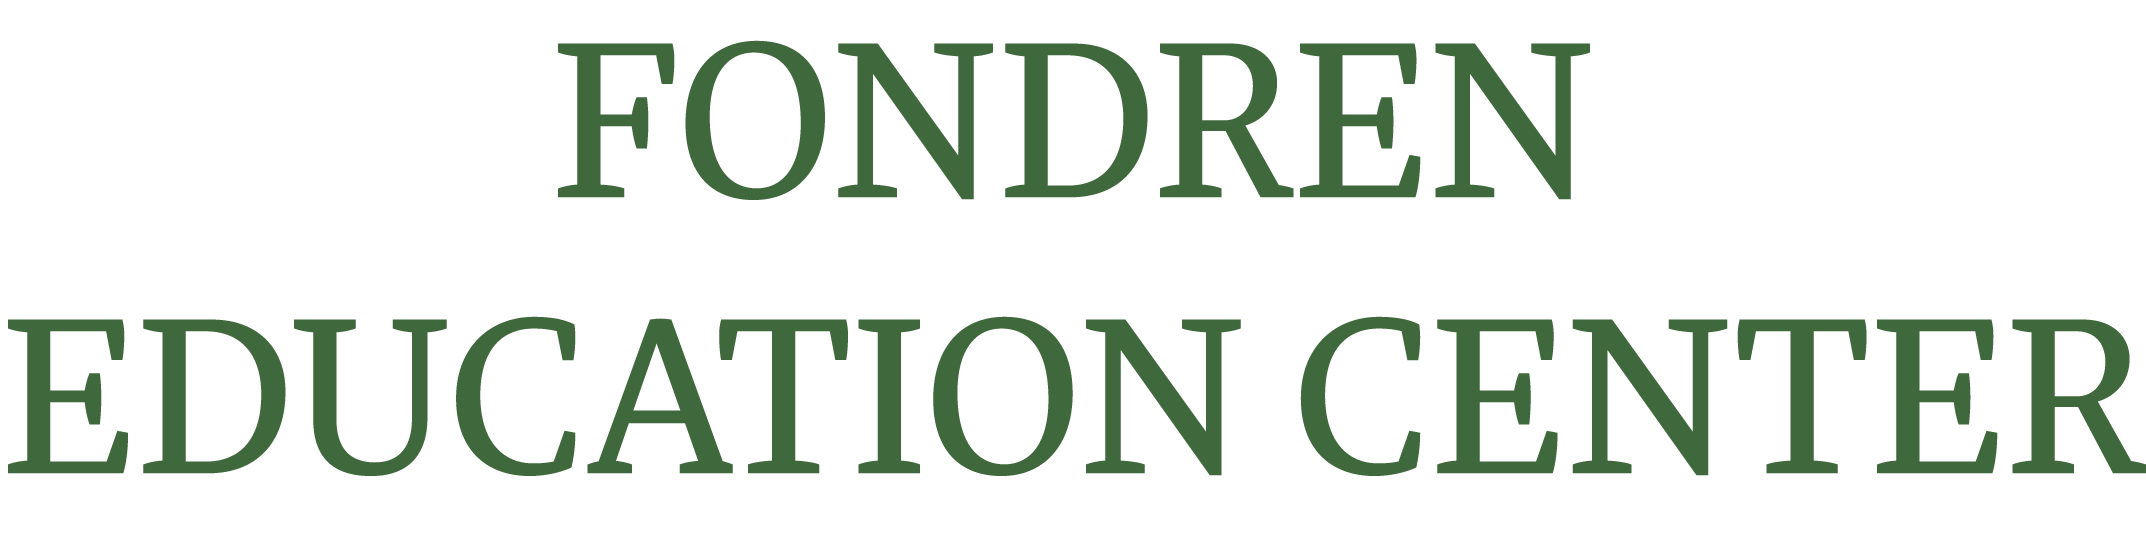 fondren education center logo